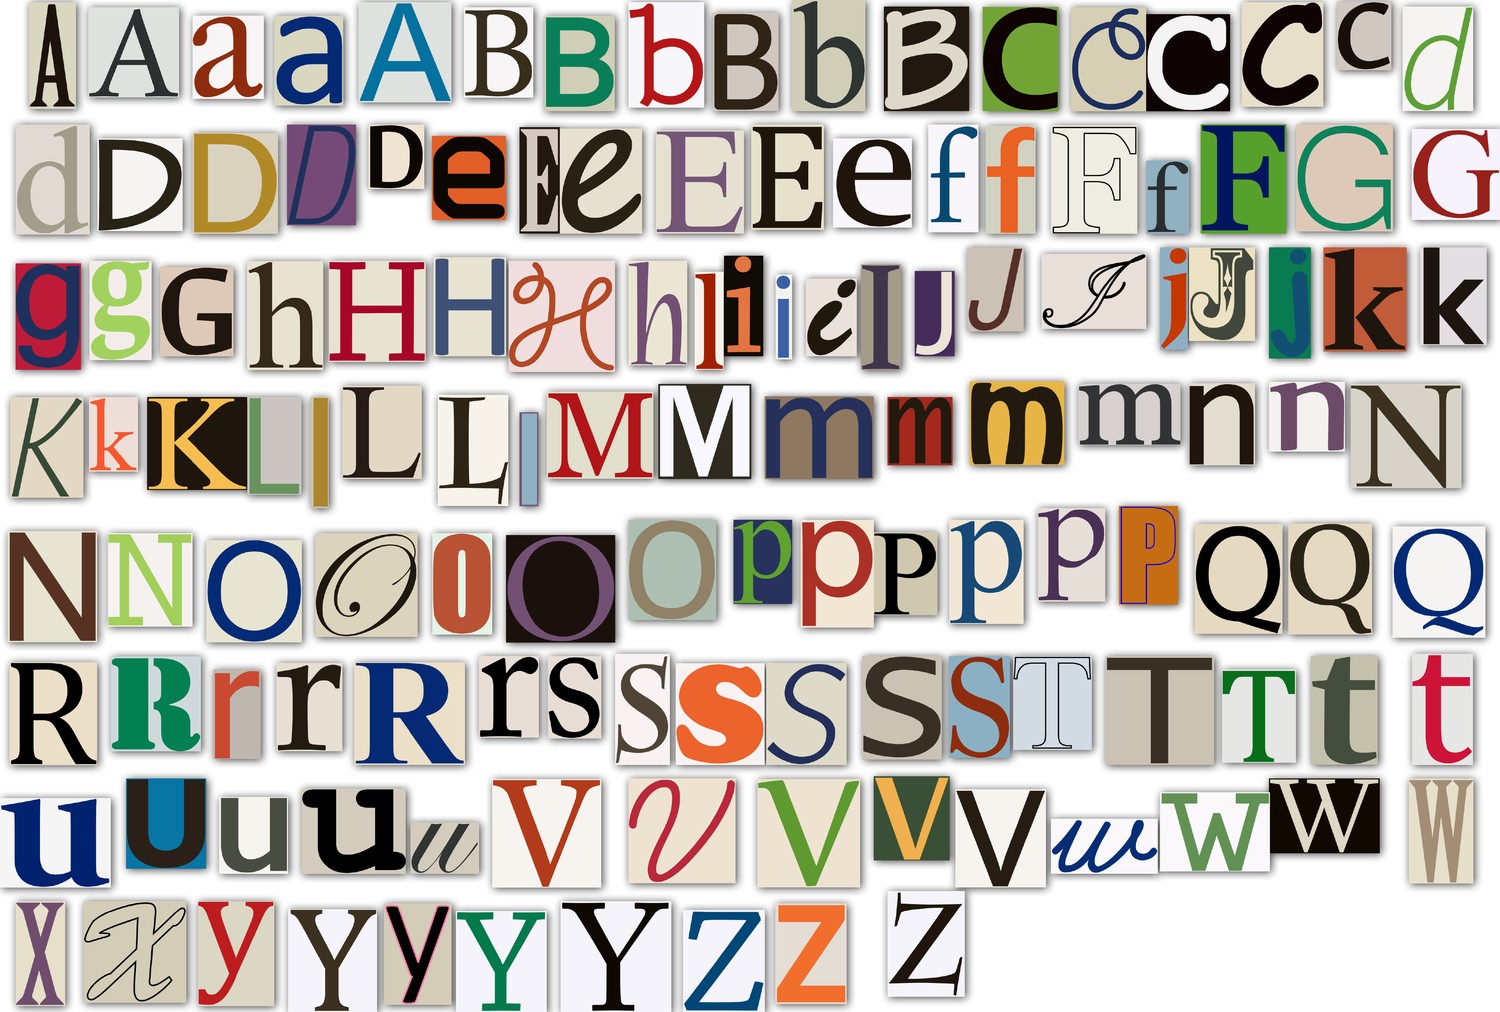 10 Magazine Cut Out Letters Font Images